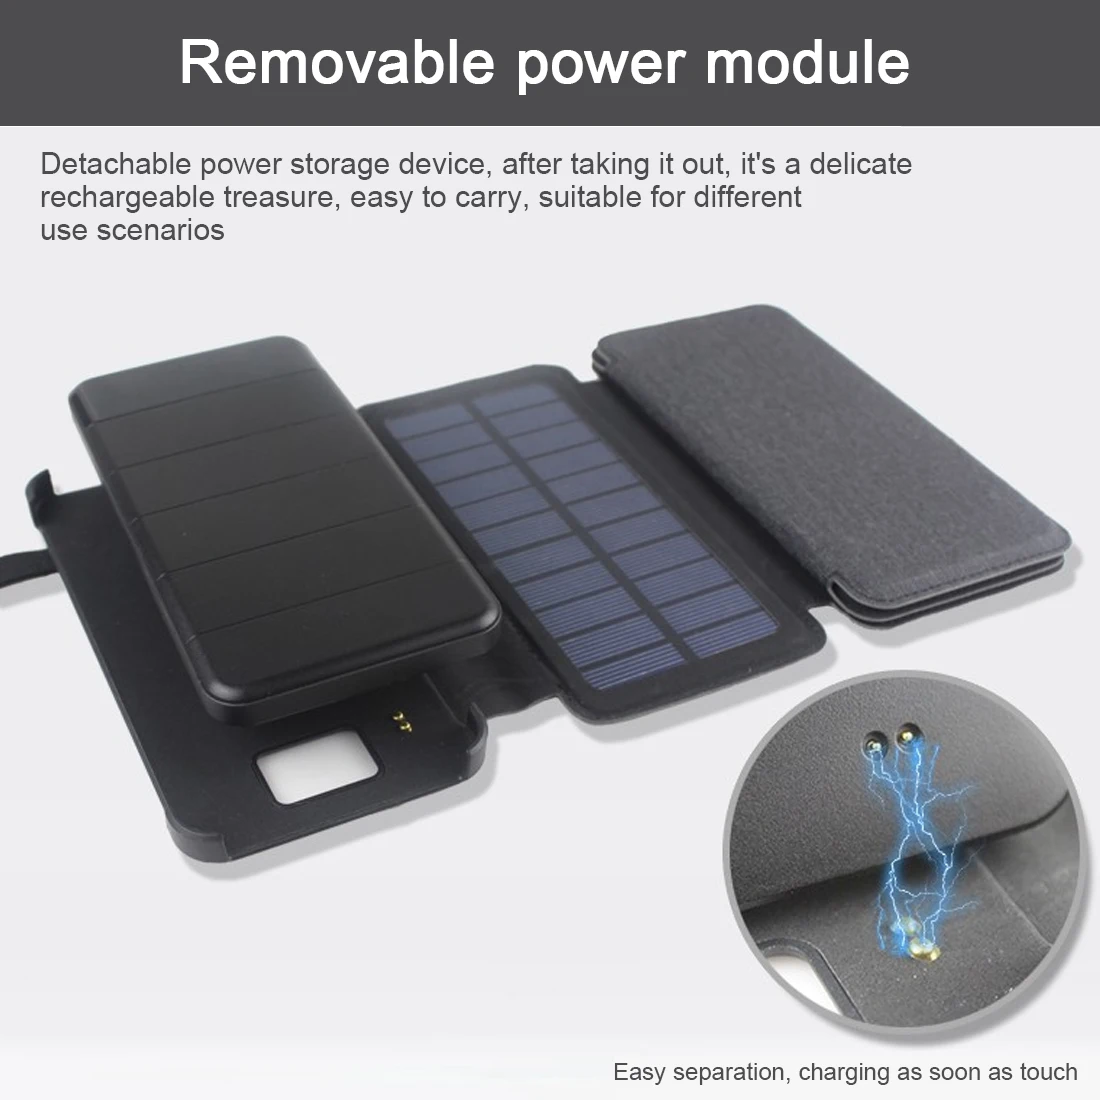 Портативное зарядное устройство на солнечной батарее, 4 складных зарядного устройства на солнечной батарее, внешний резервный пакет для смартфонов и планшетов